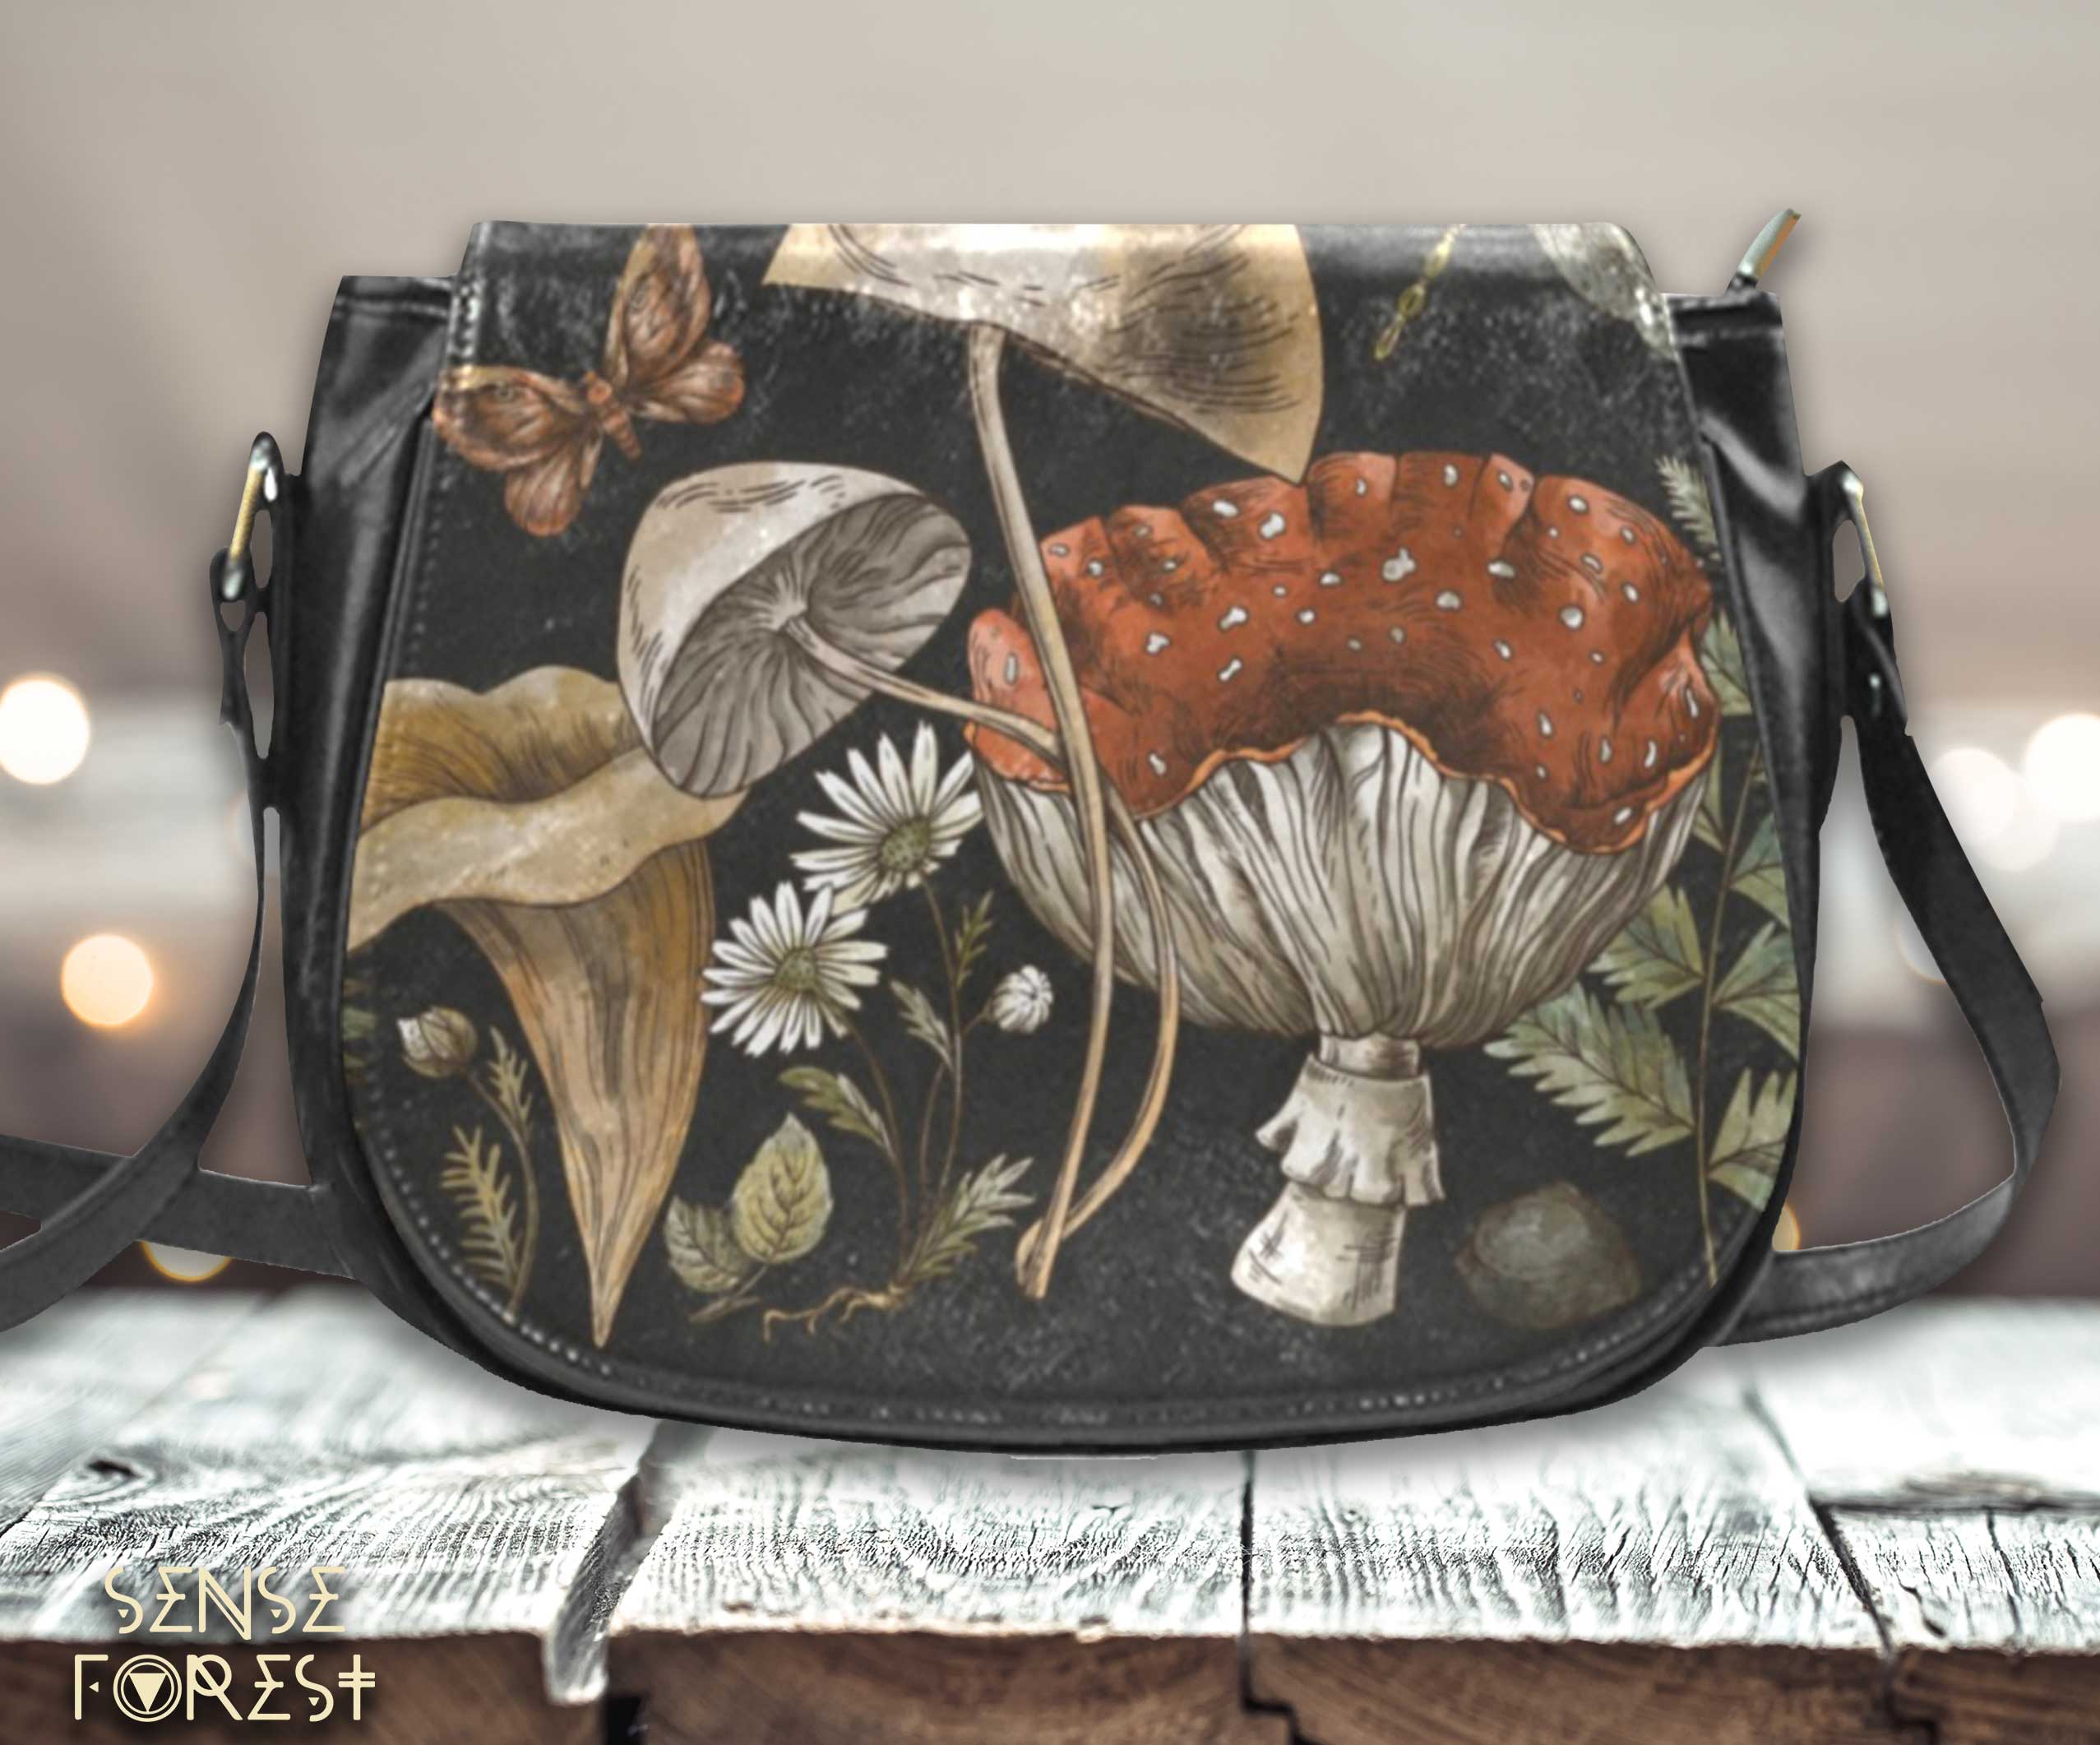 mushroom leather bag